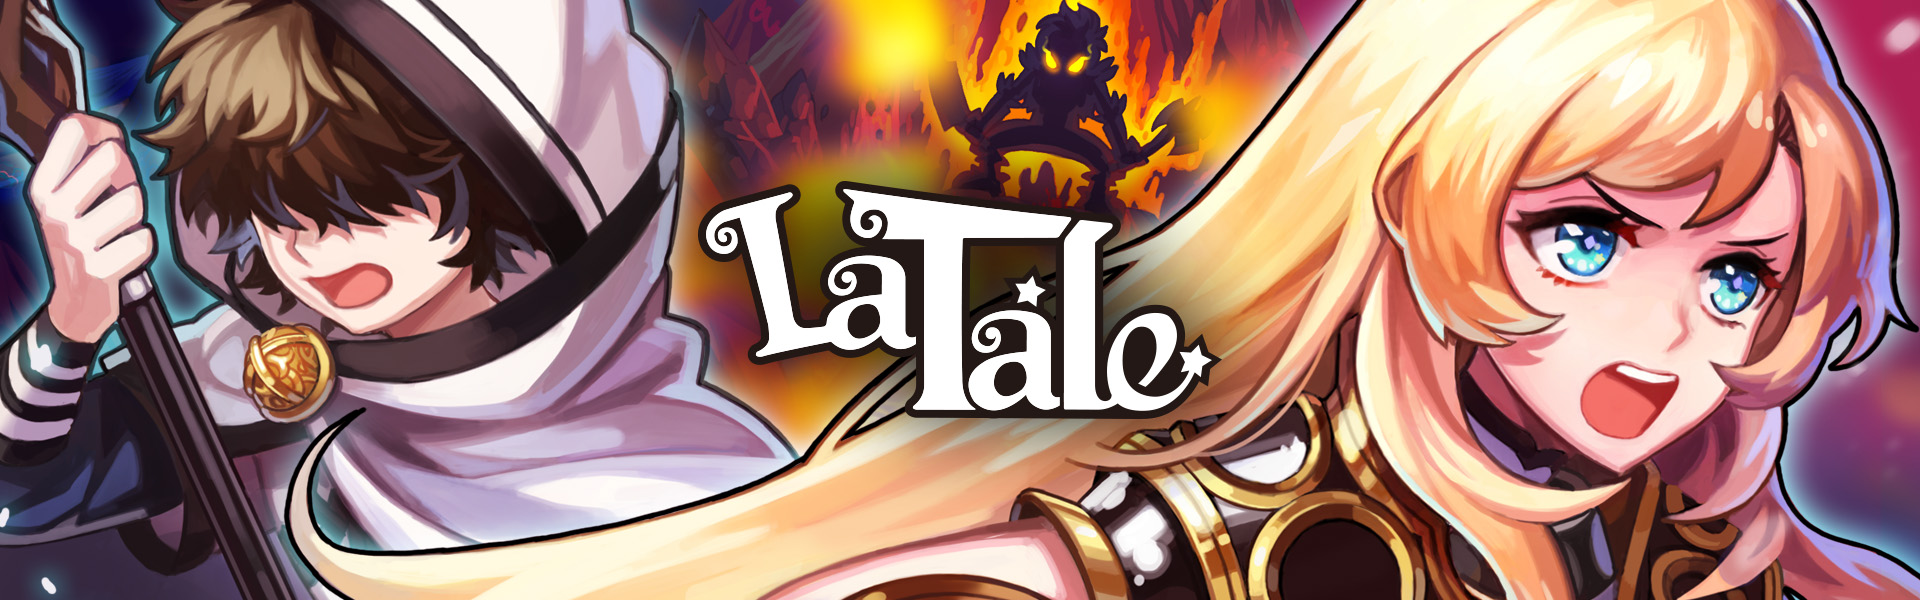 La Tale Online - Beautiful 2D Side-Scrolling MMORPG